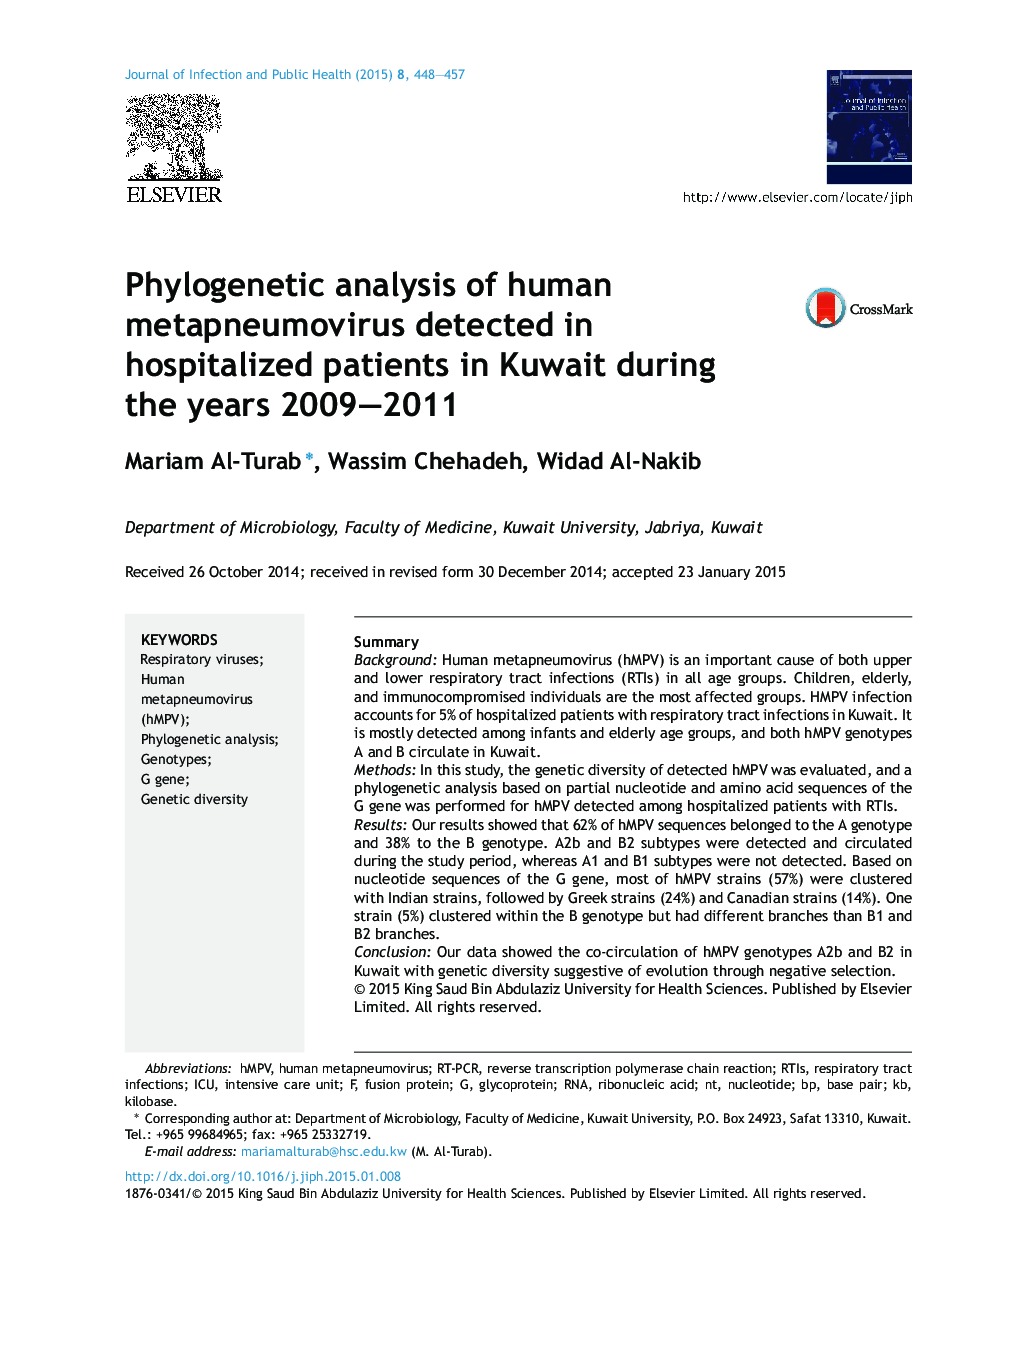 تجزیه و تحلیل فیلوژنتیک ویروس متپنومای انسانی در بیماران بستری شده در کویت در سالهای 2009 و 2011 